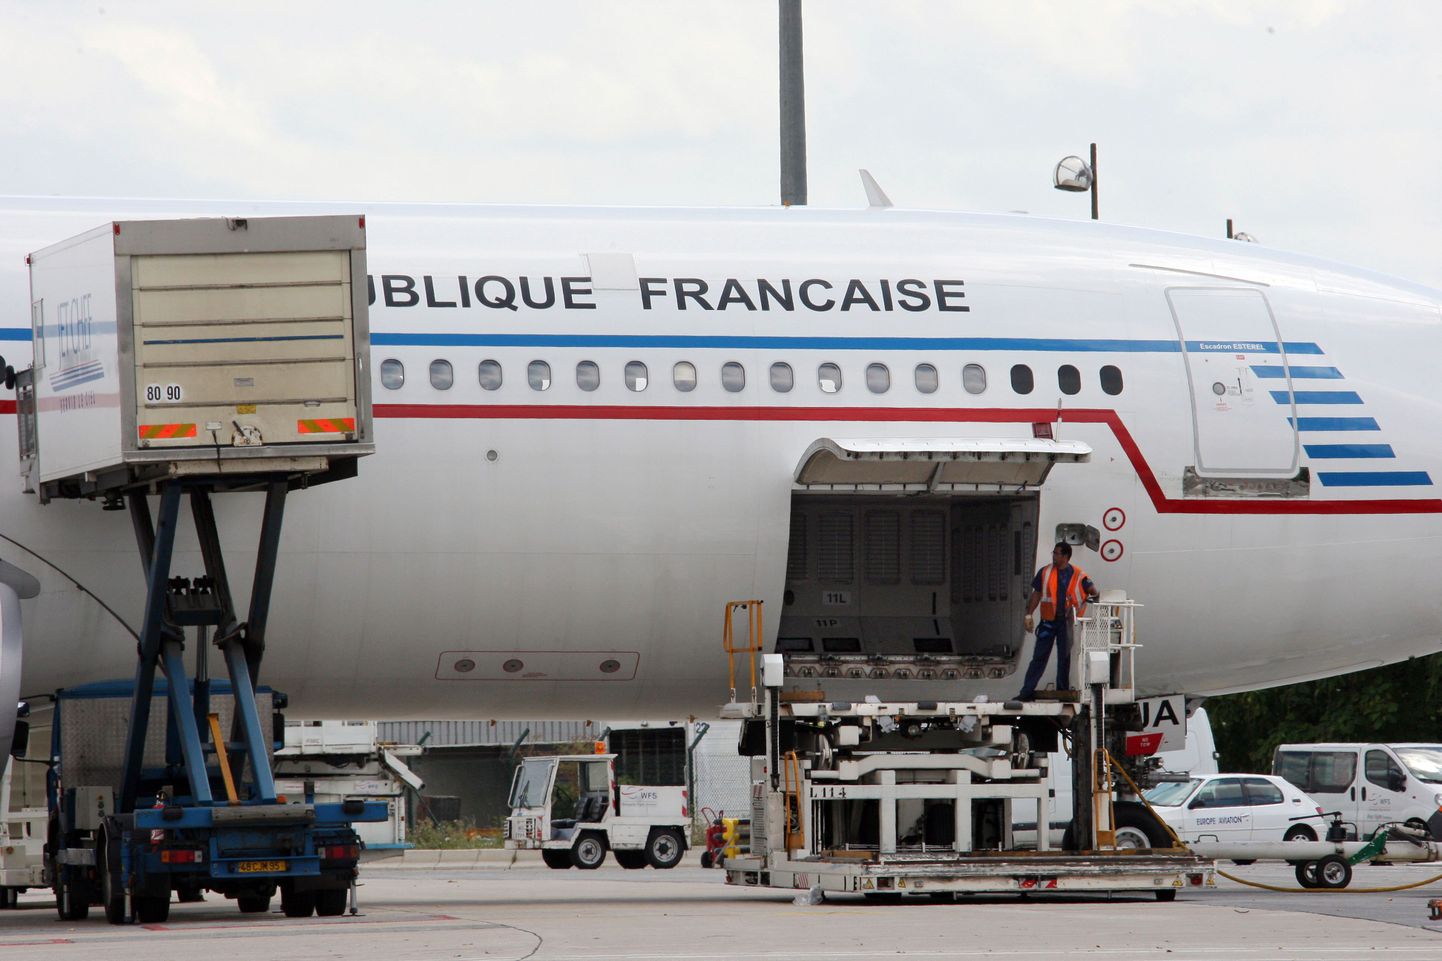 Ka Prantsusmaa saatis täna lennukid oma kodanikke ära tooma.